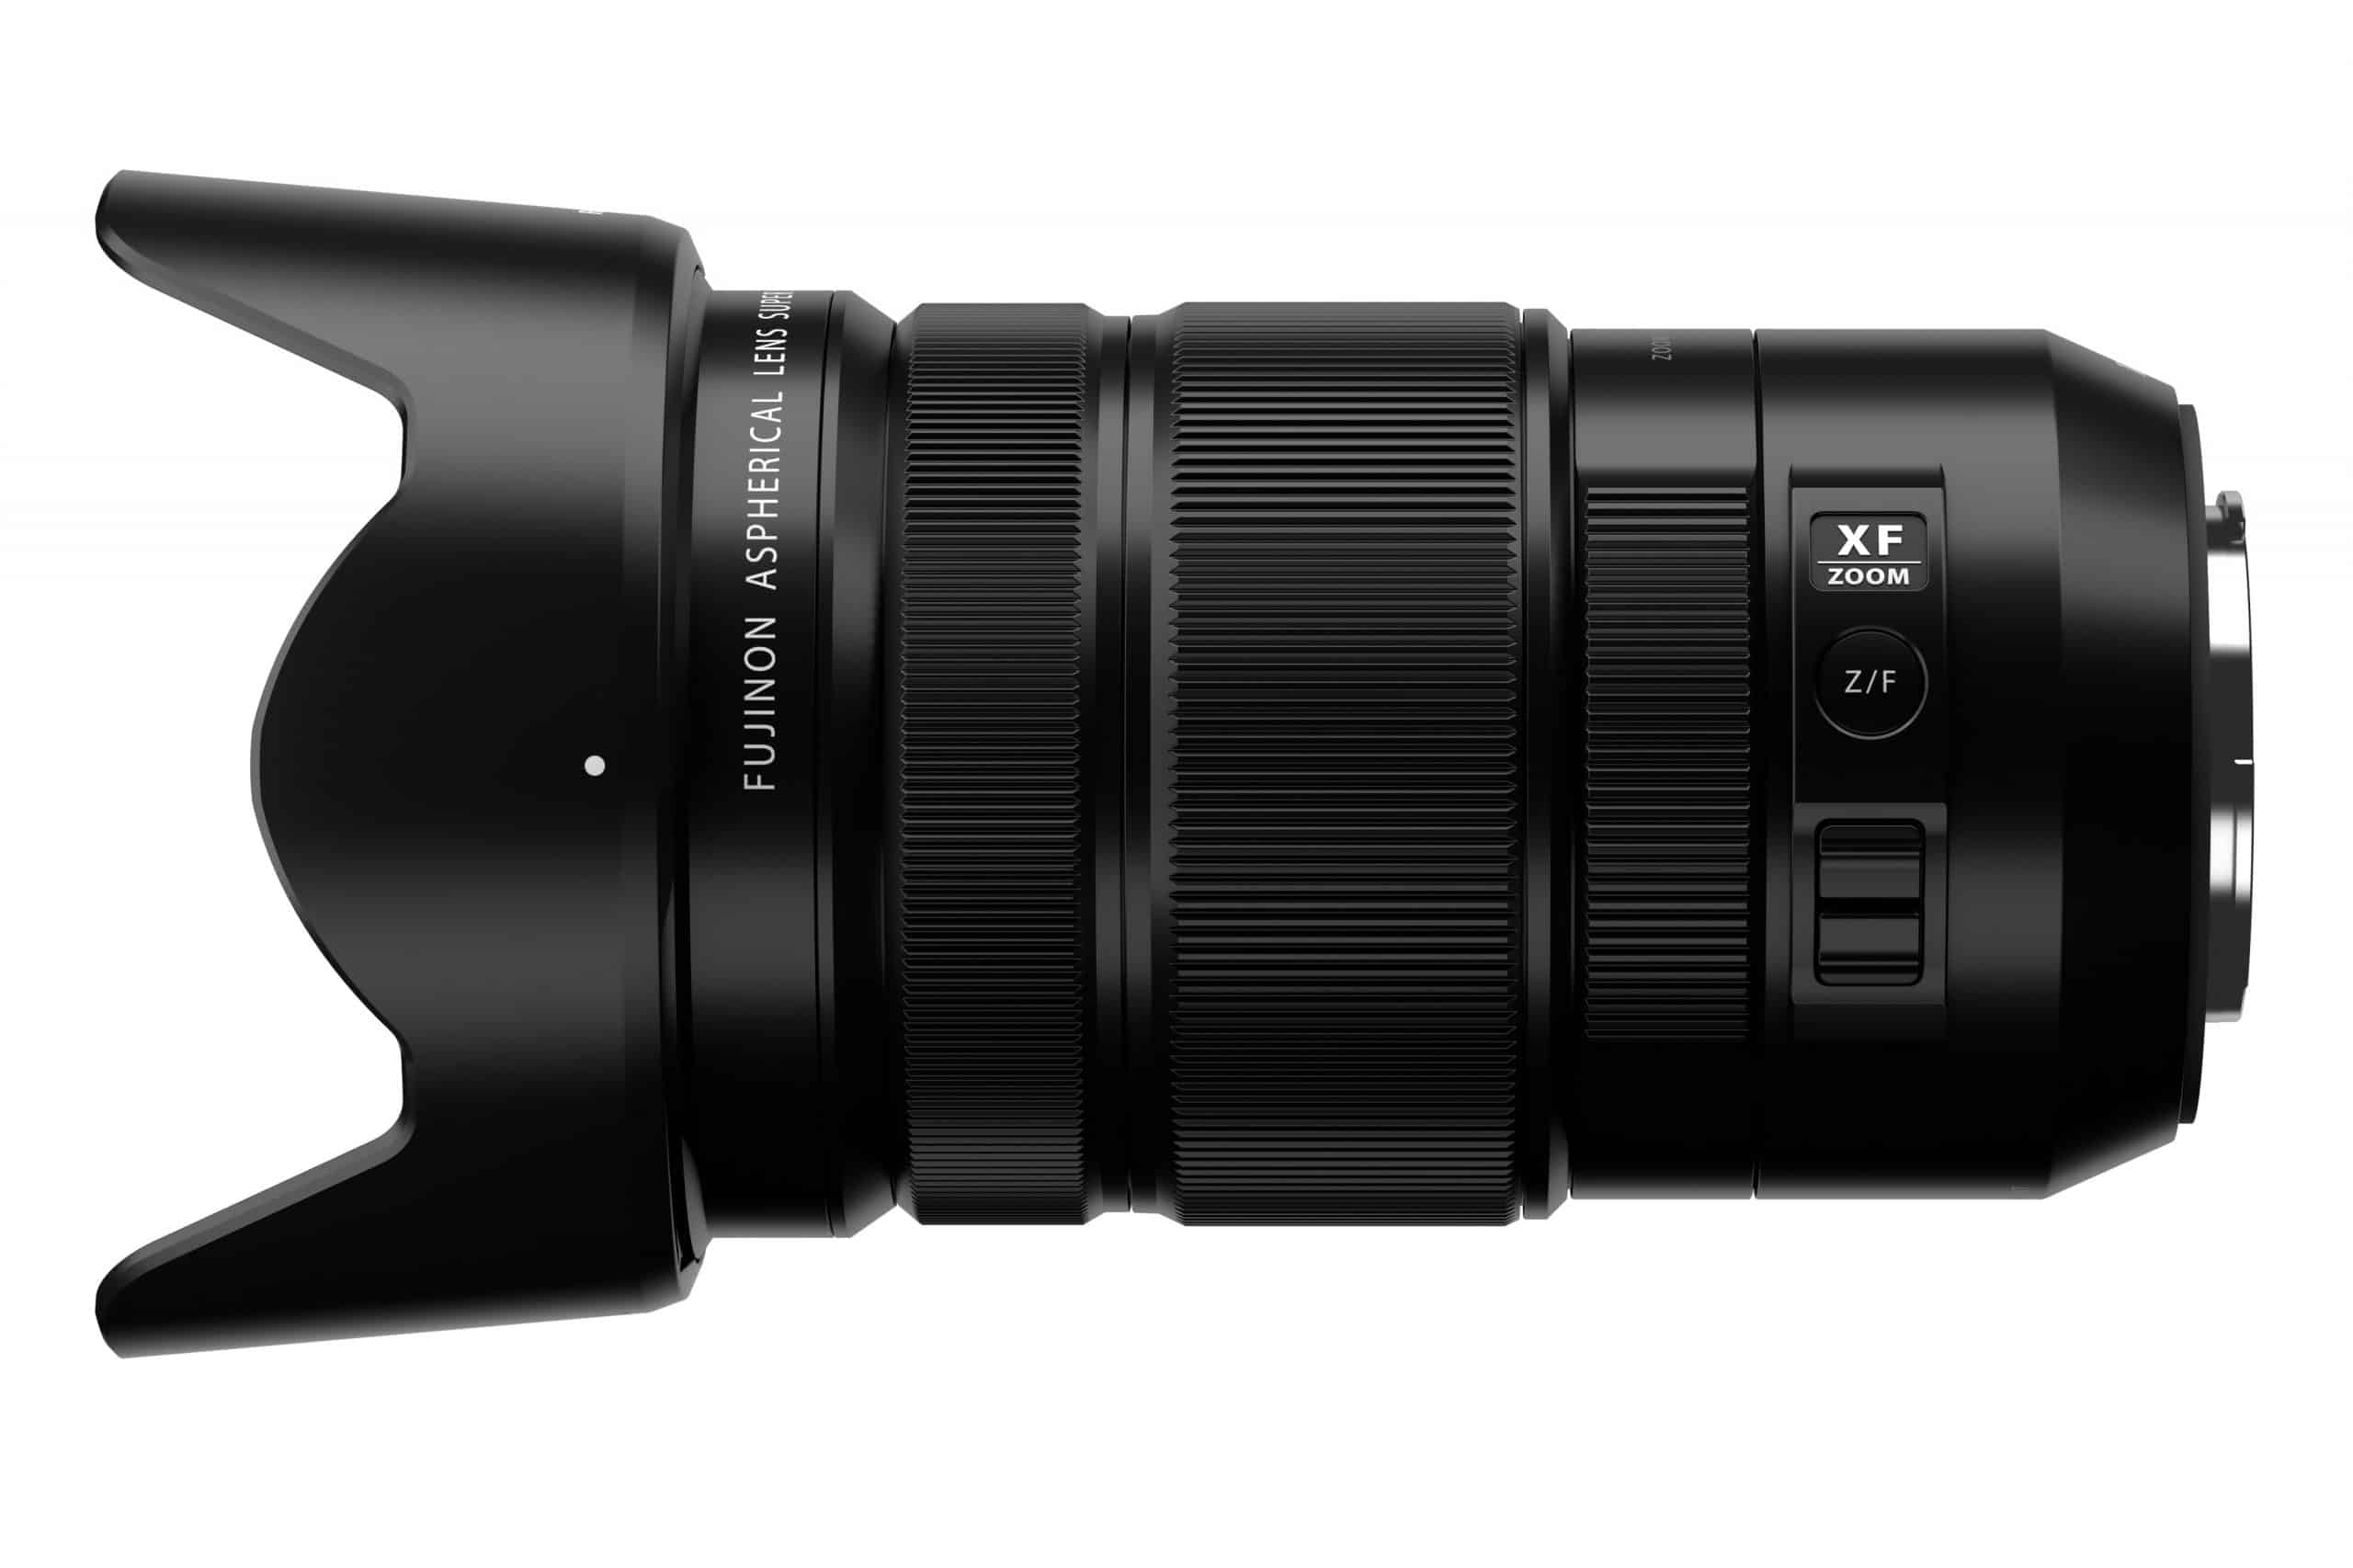 Fujifilm ra mắt ống kính XF 18-120mm F4 LM PZ WR, ống kính zoom đa năng nhiều điểm nhấn với mức giá hợp lý